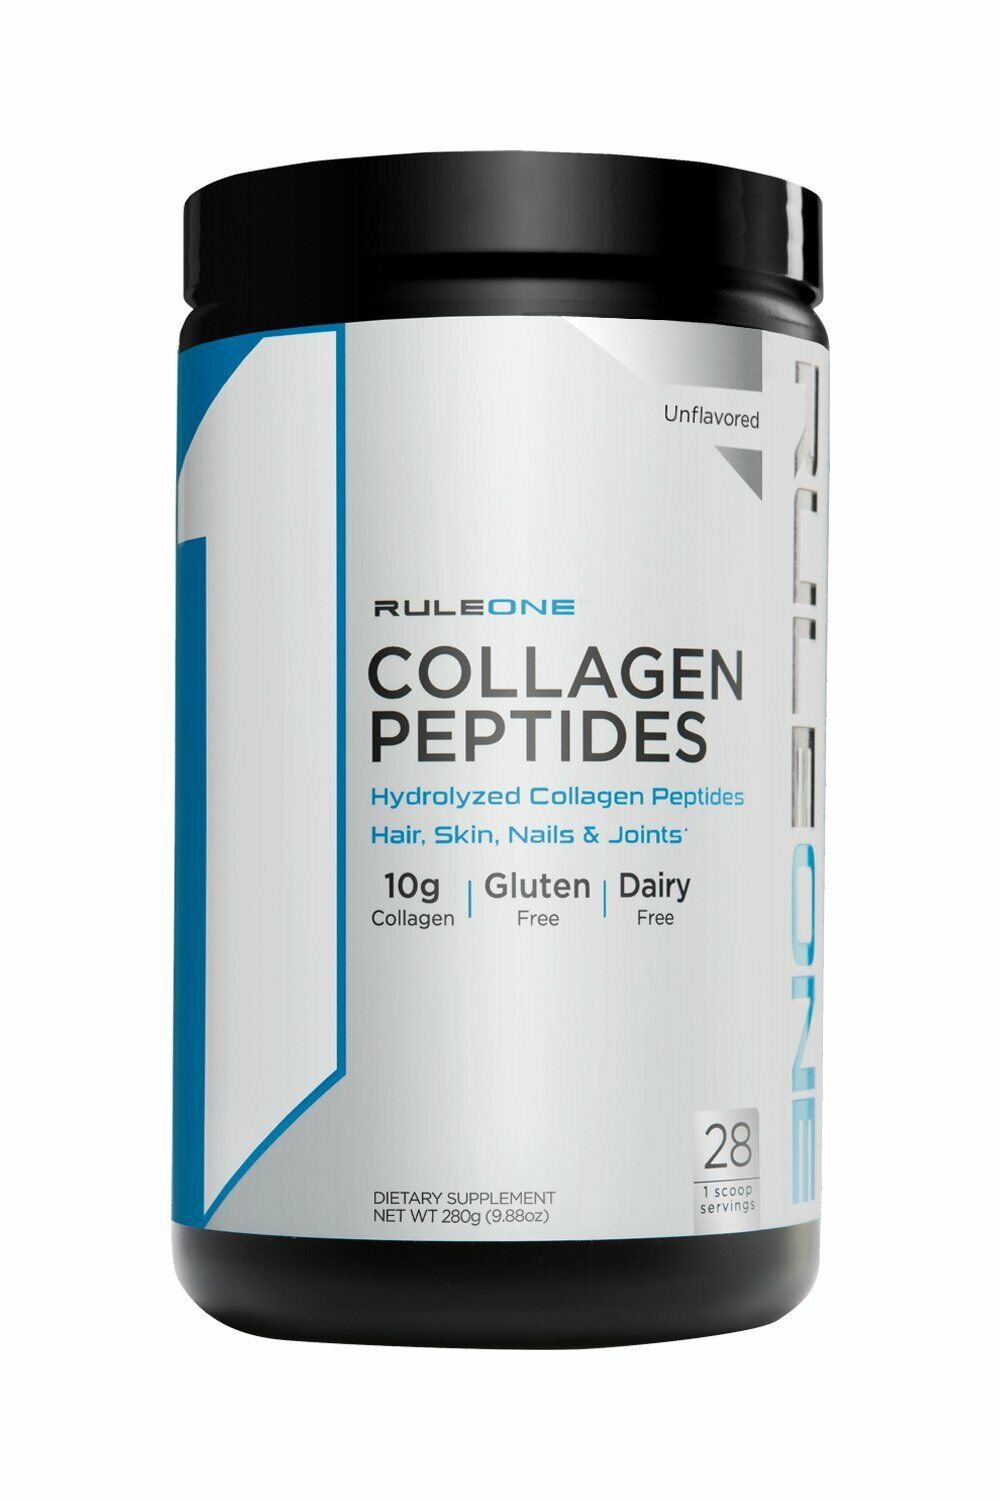 Rule 1 Collagen Peptides 28 Serve